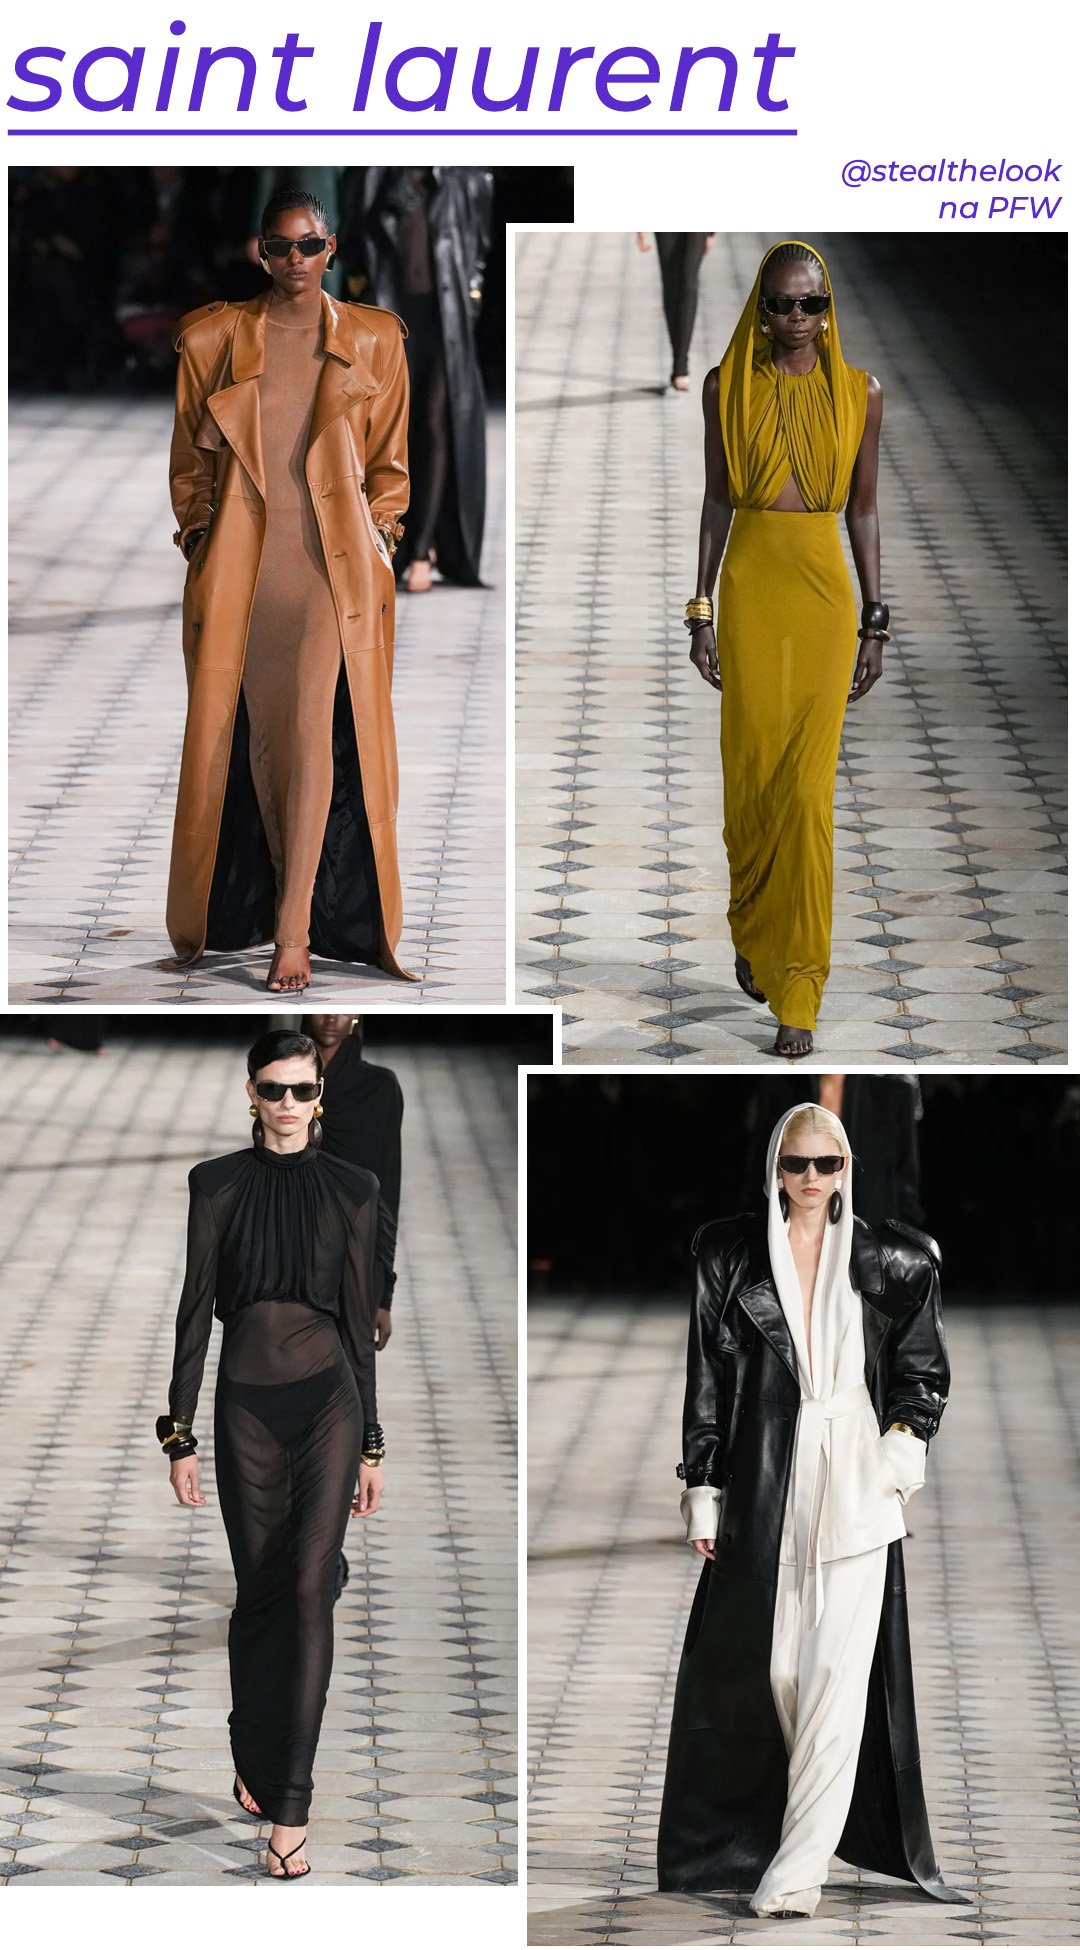 Saint Laurent S/S 2023 - roupas diversas - Paris Fashion Week - Primavera - modelo andando pela passarela - https://stealthelook.com.br